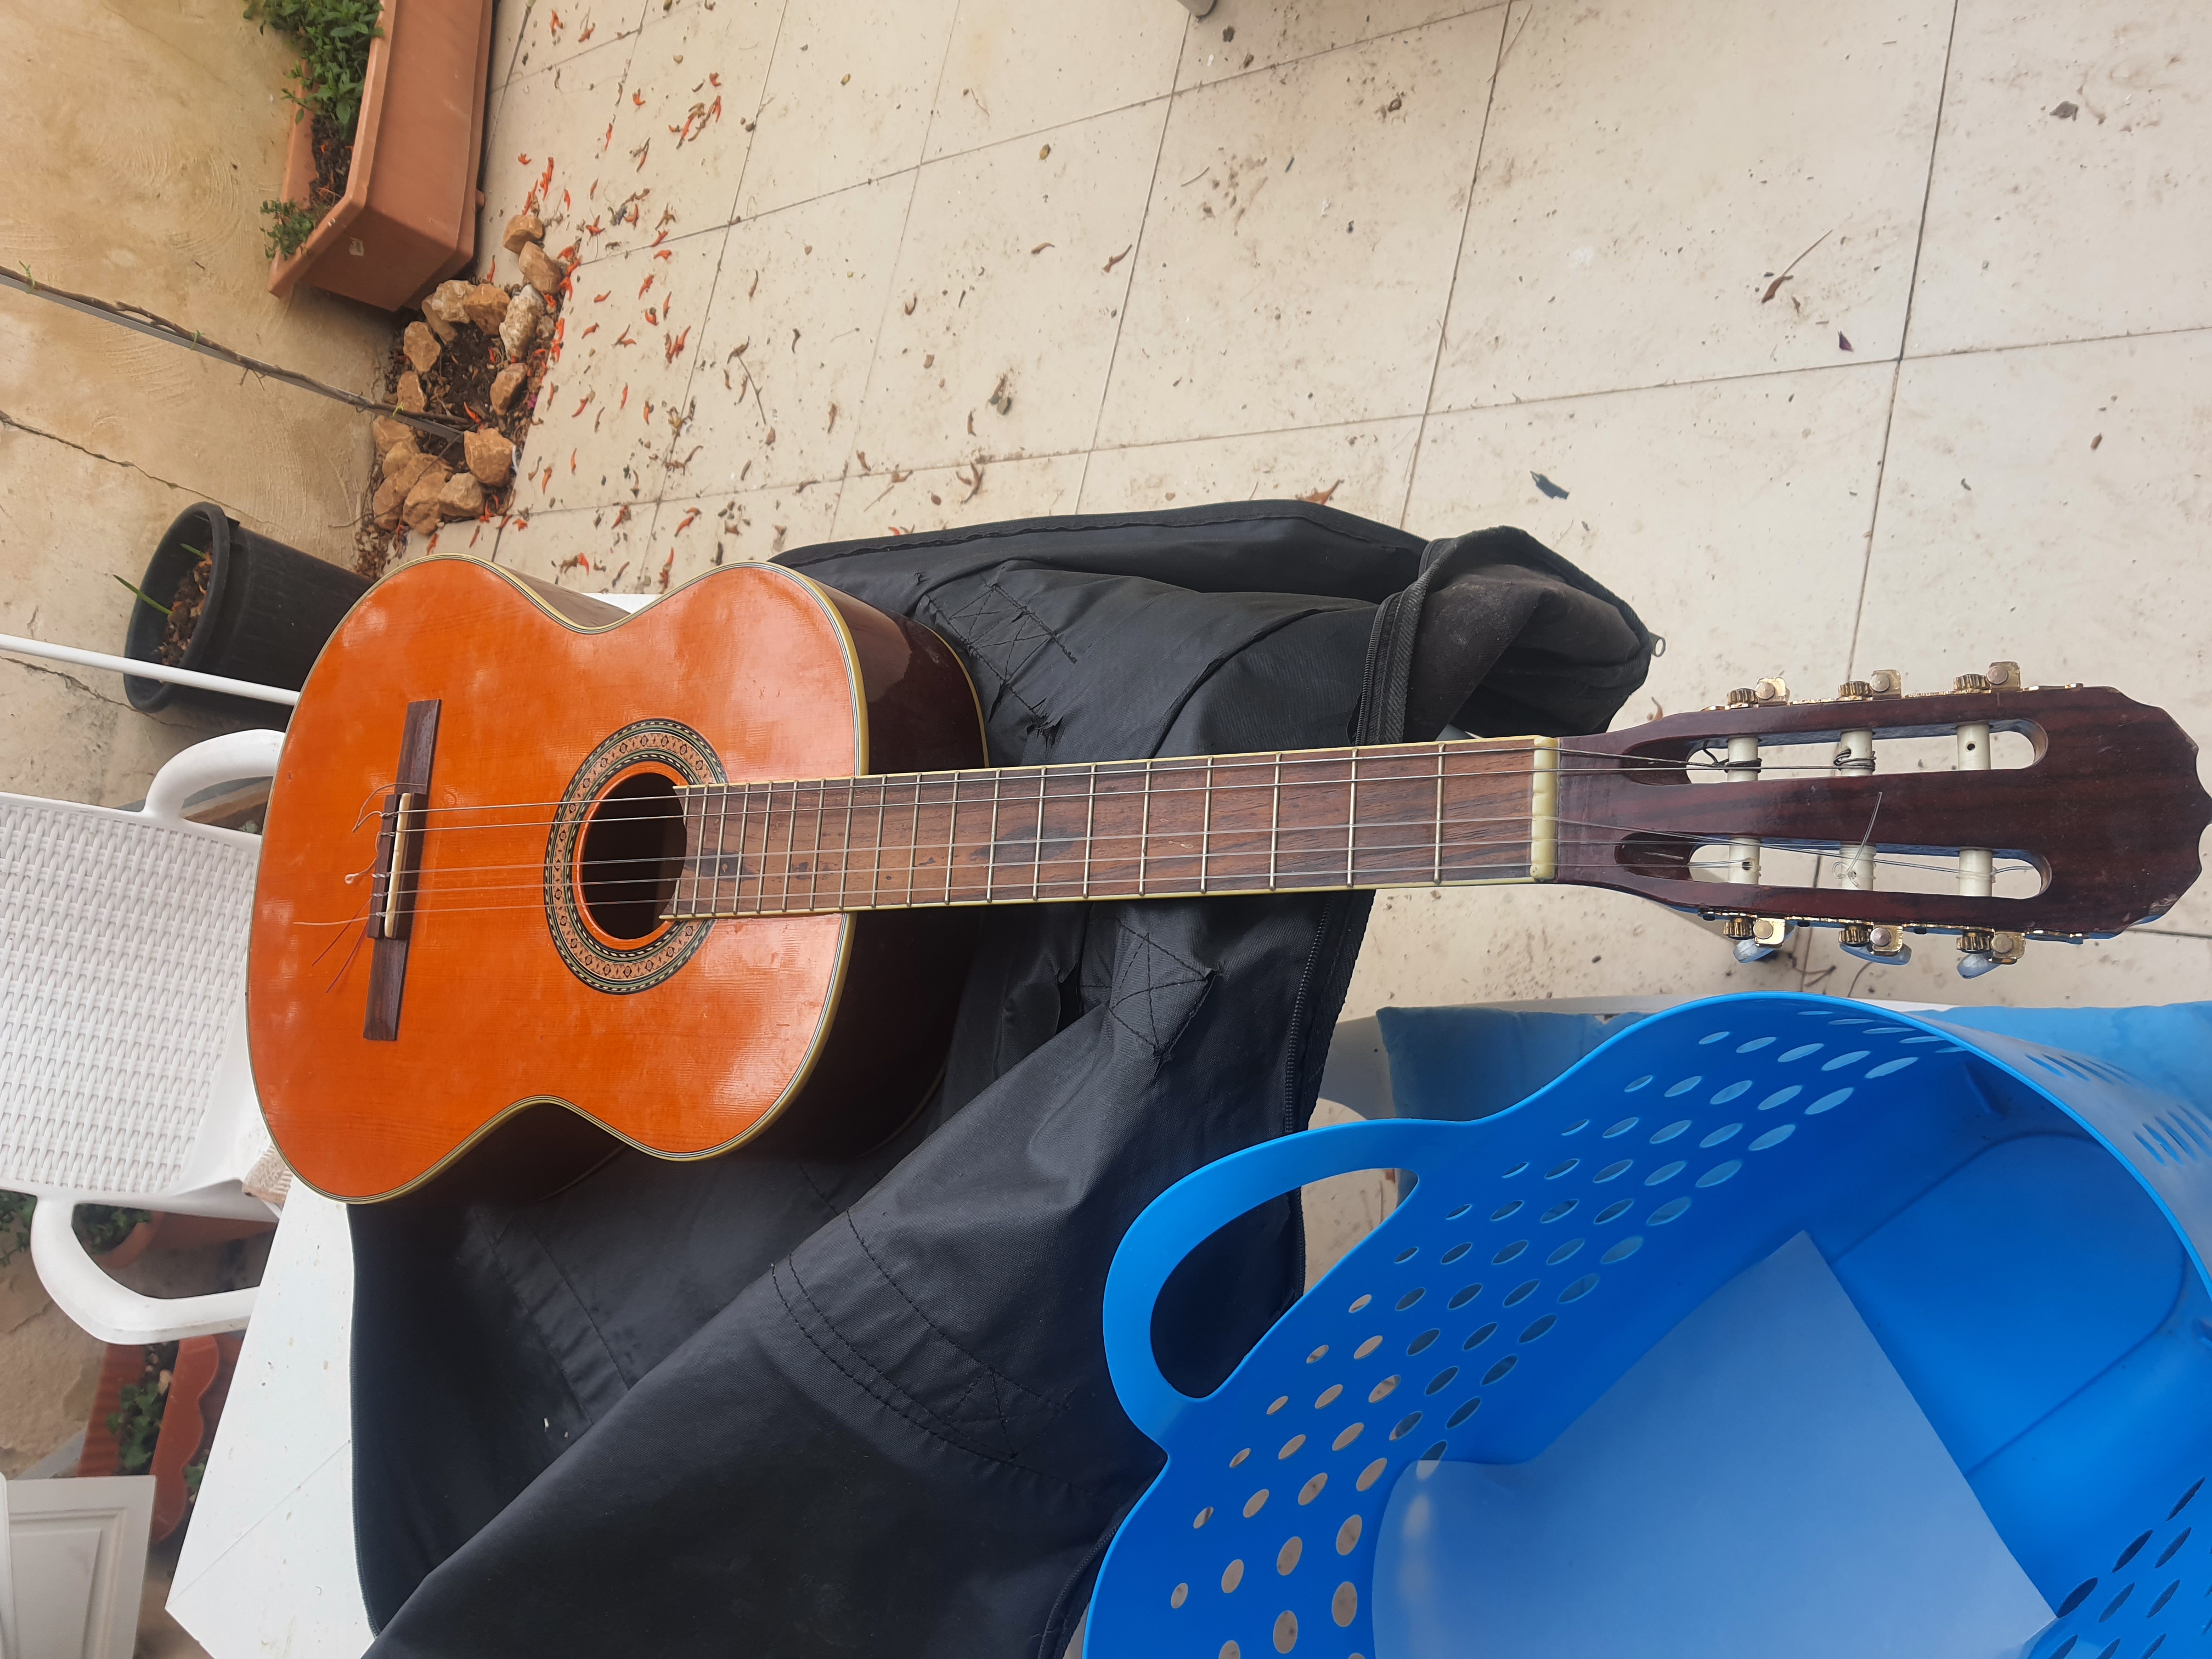 תמונה 1 , גיטרה מונטנה למכירה בירושלים כלי נגינה  גיטרה אקוסטית